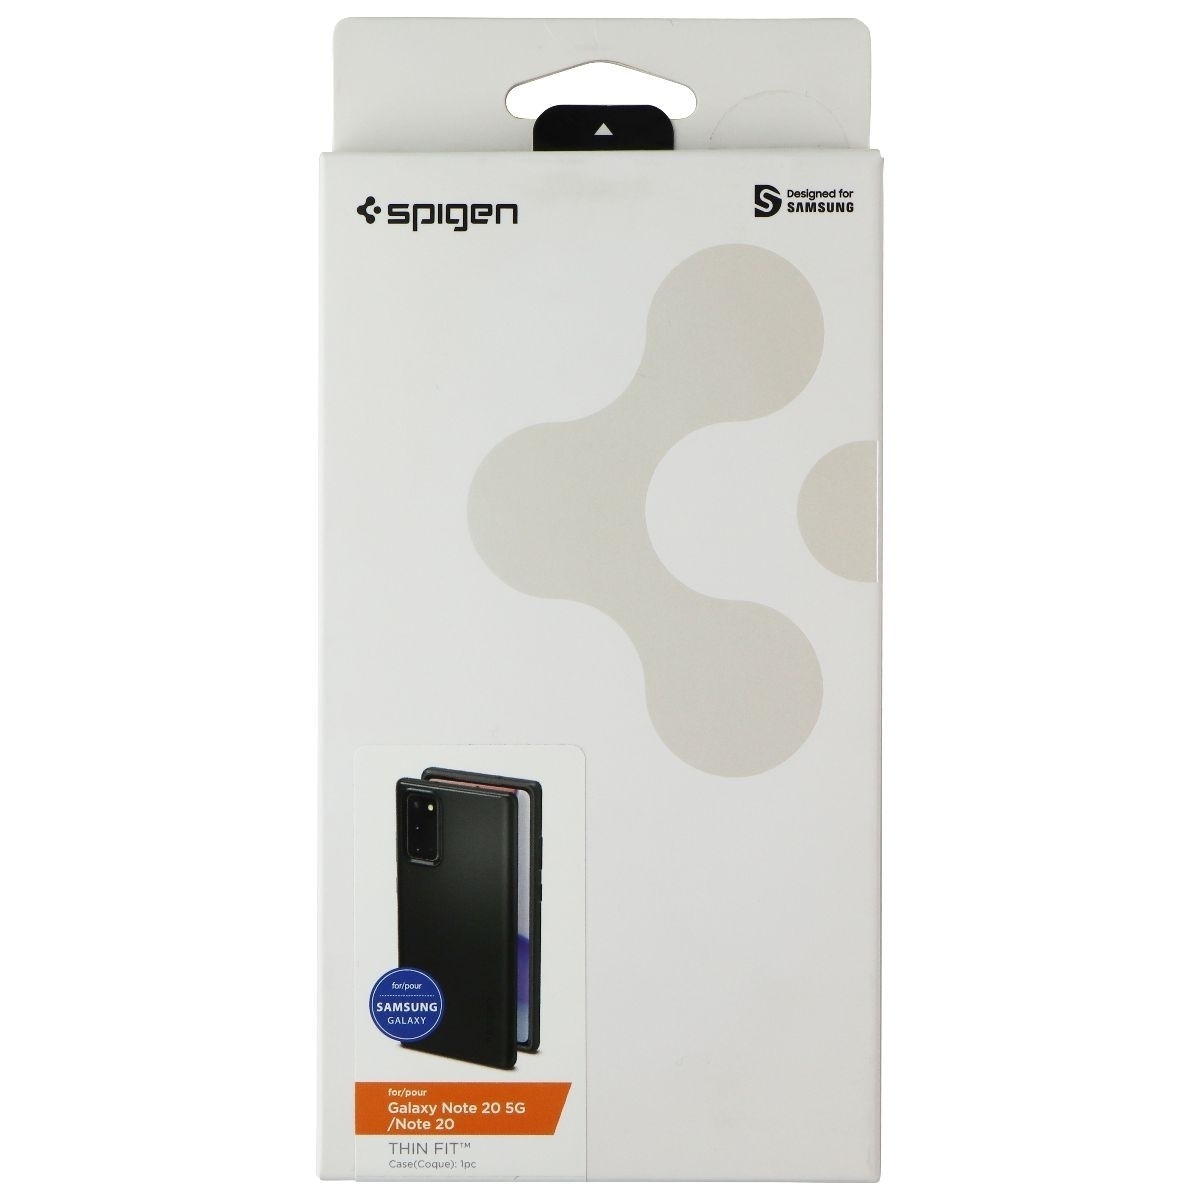 Spigen Thin Fit Series Case For Samsung Galaxy Note 20/Note 20 5G - Black